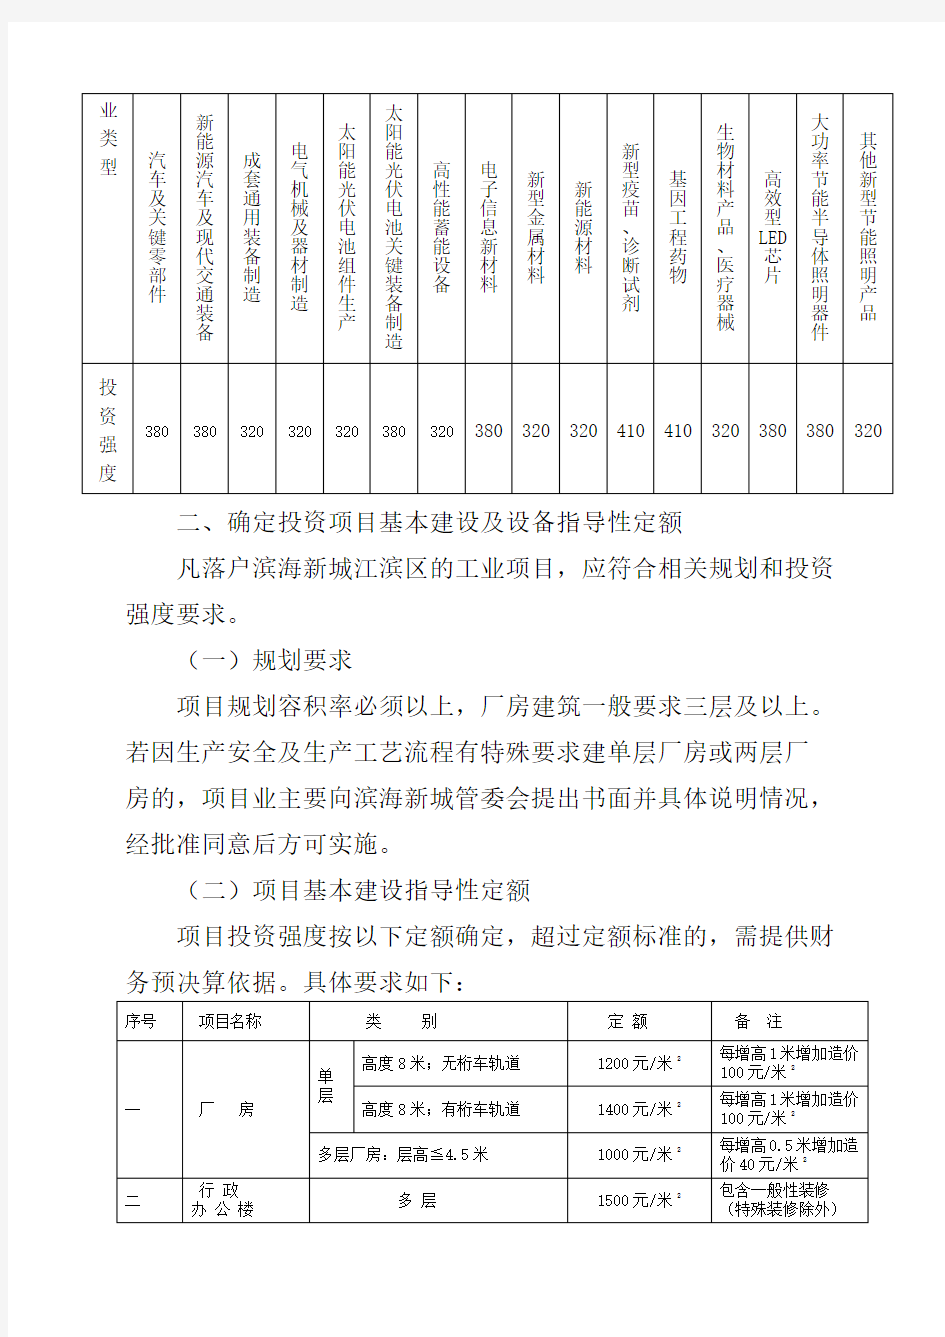 绍滨海委号关于印发《工业项目投资强度管理办法》的通知